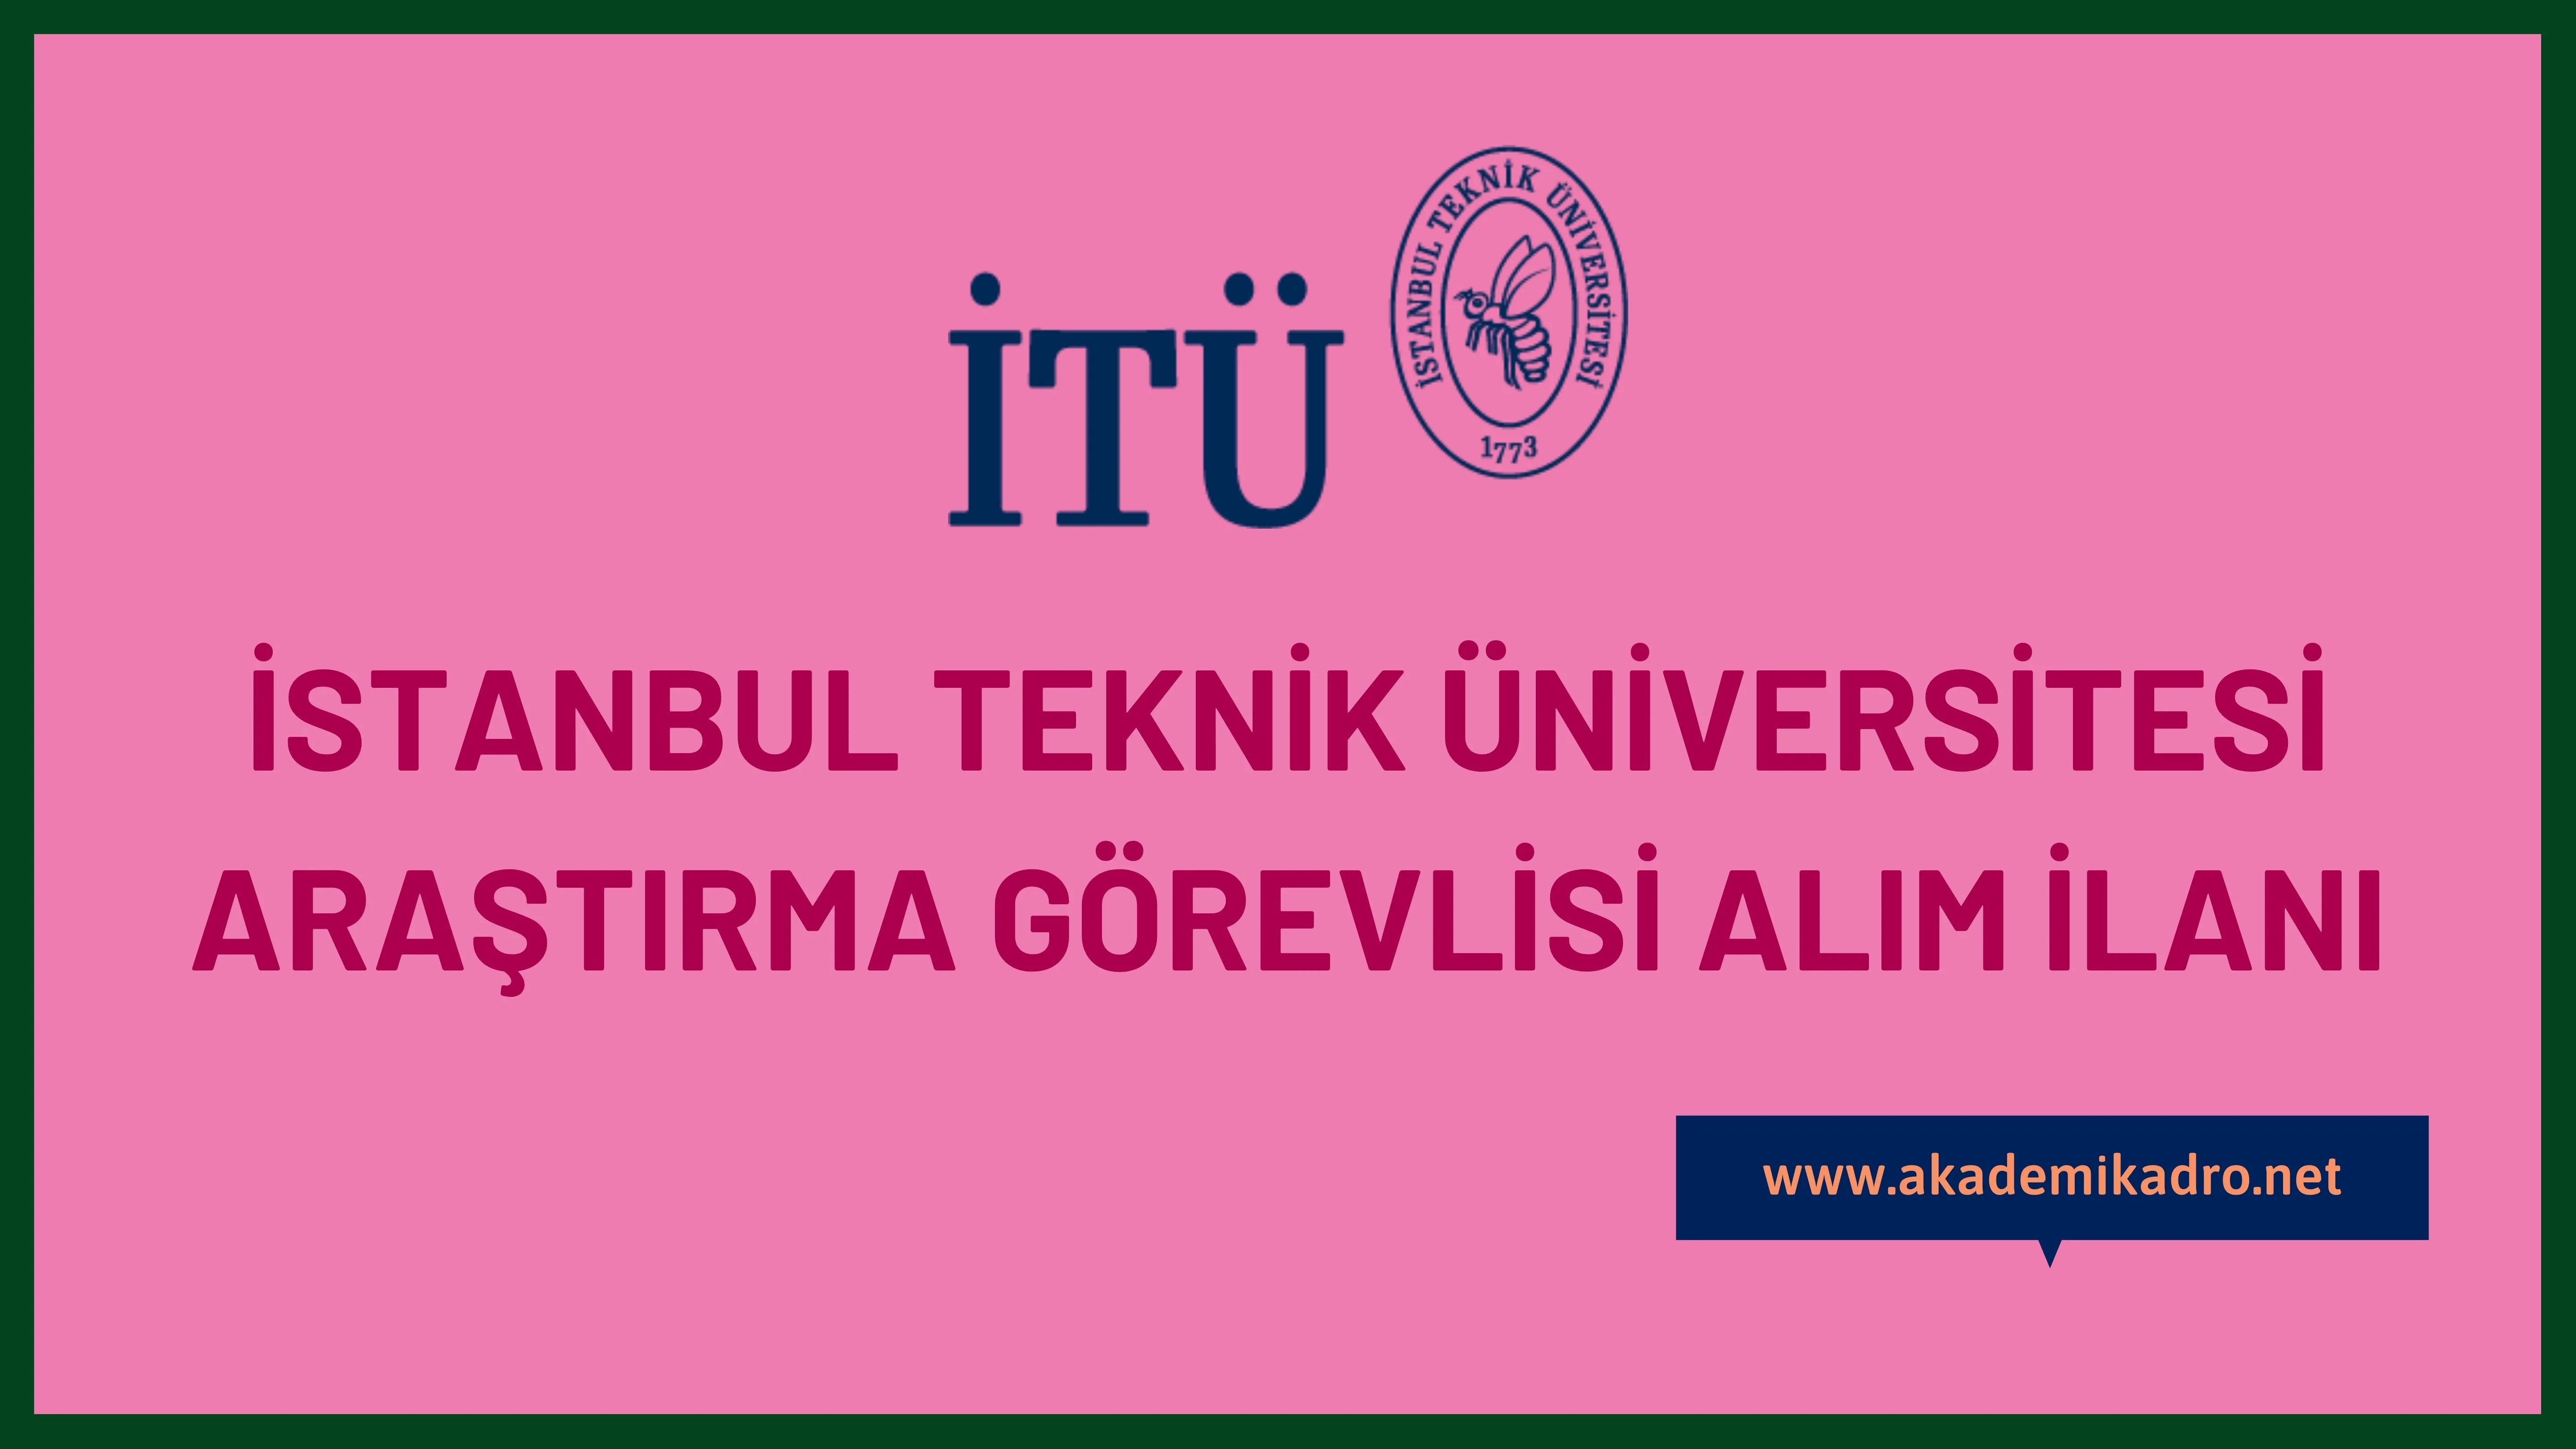 İstanbul Teknik Üniversitesi 27 Araştırma görevlisi alacaktır. Son başvuru tarihi 07 Kasım 2022